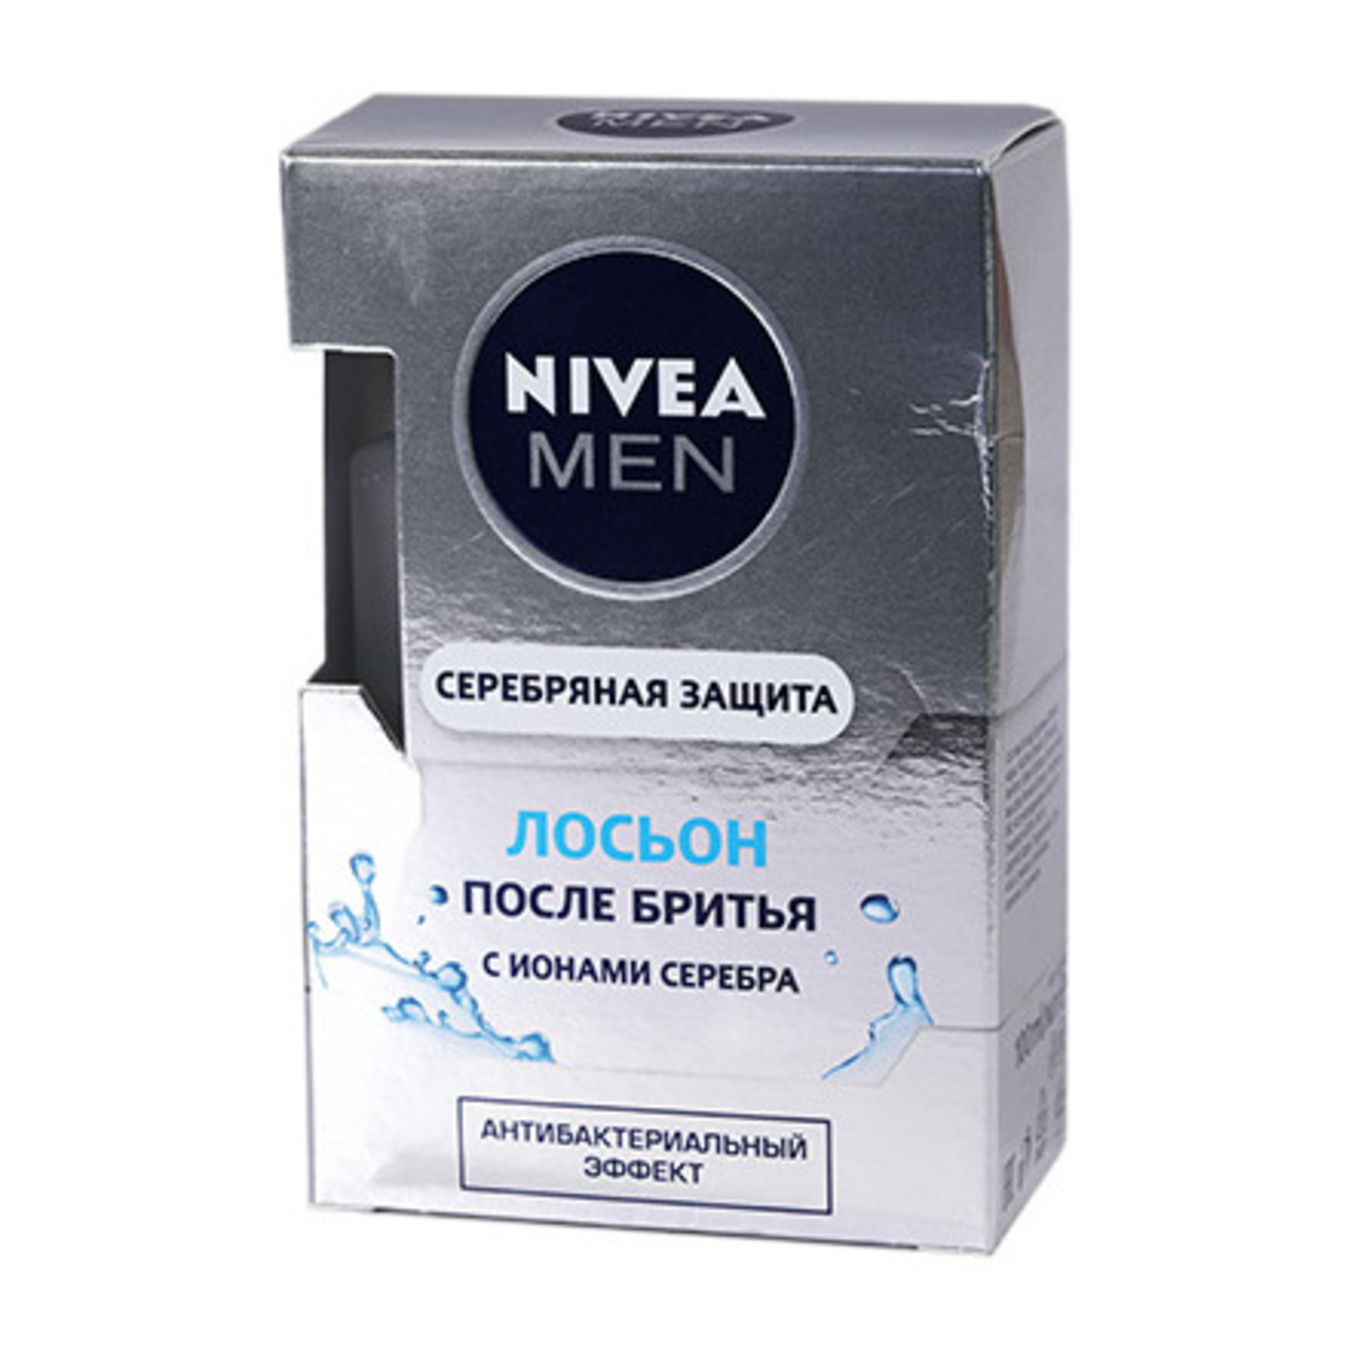 Лосьон Nivea Men Серебряная защита антибактериальный после бритья 100мл